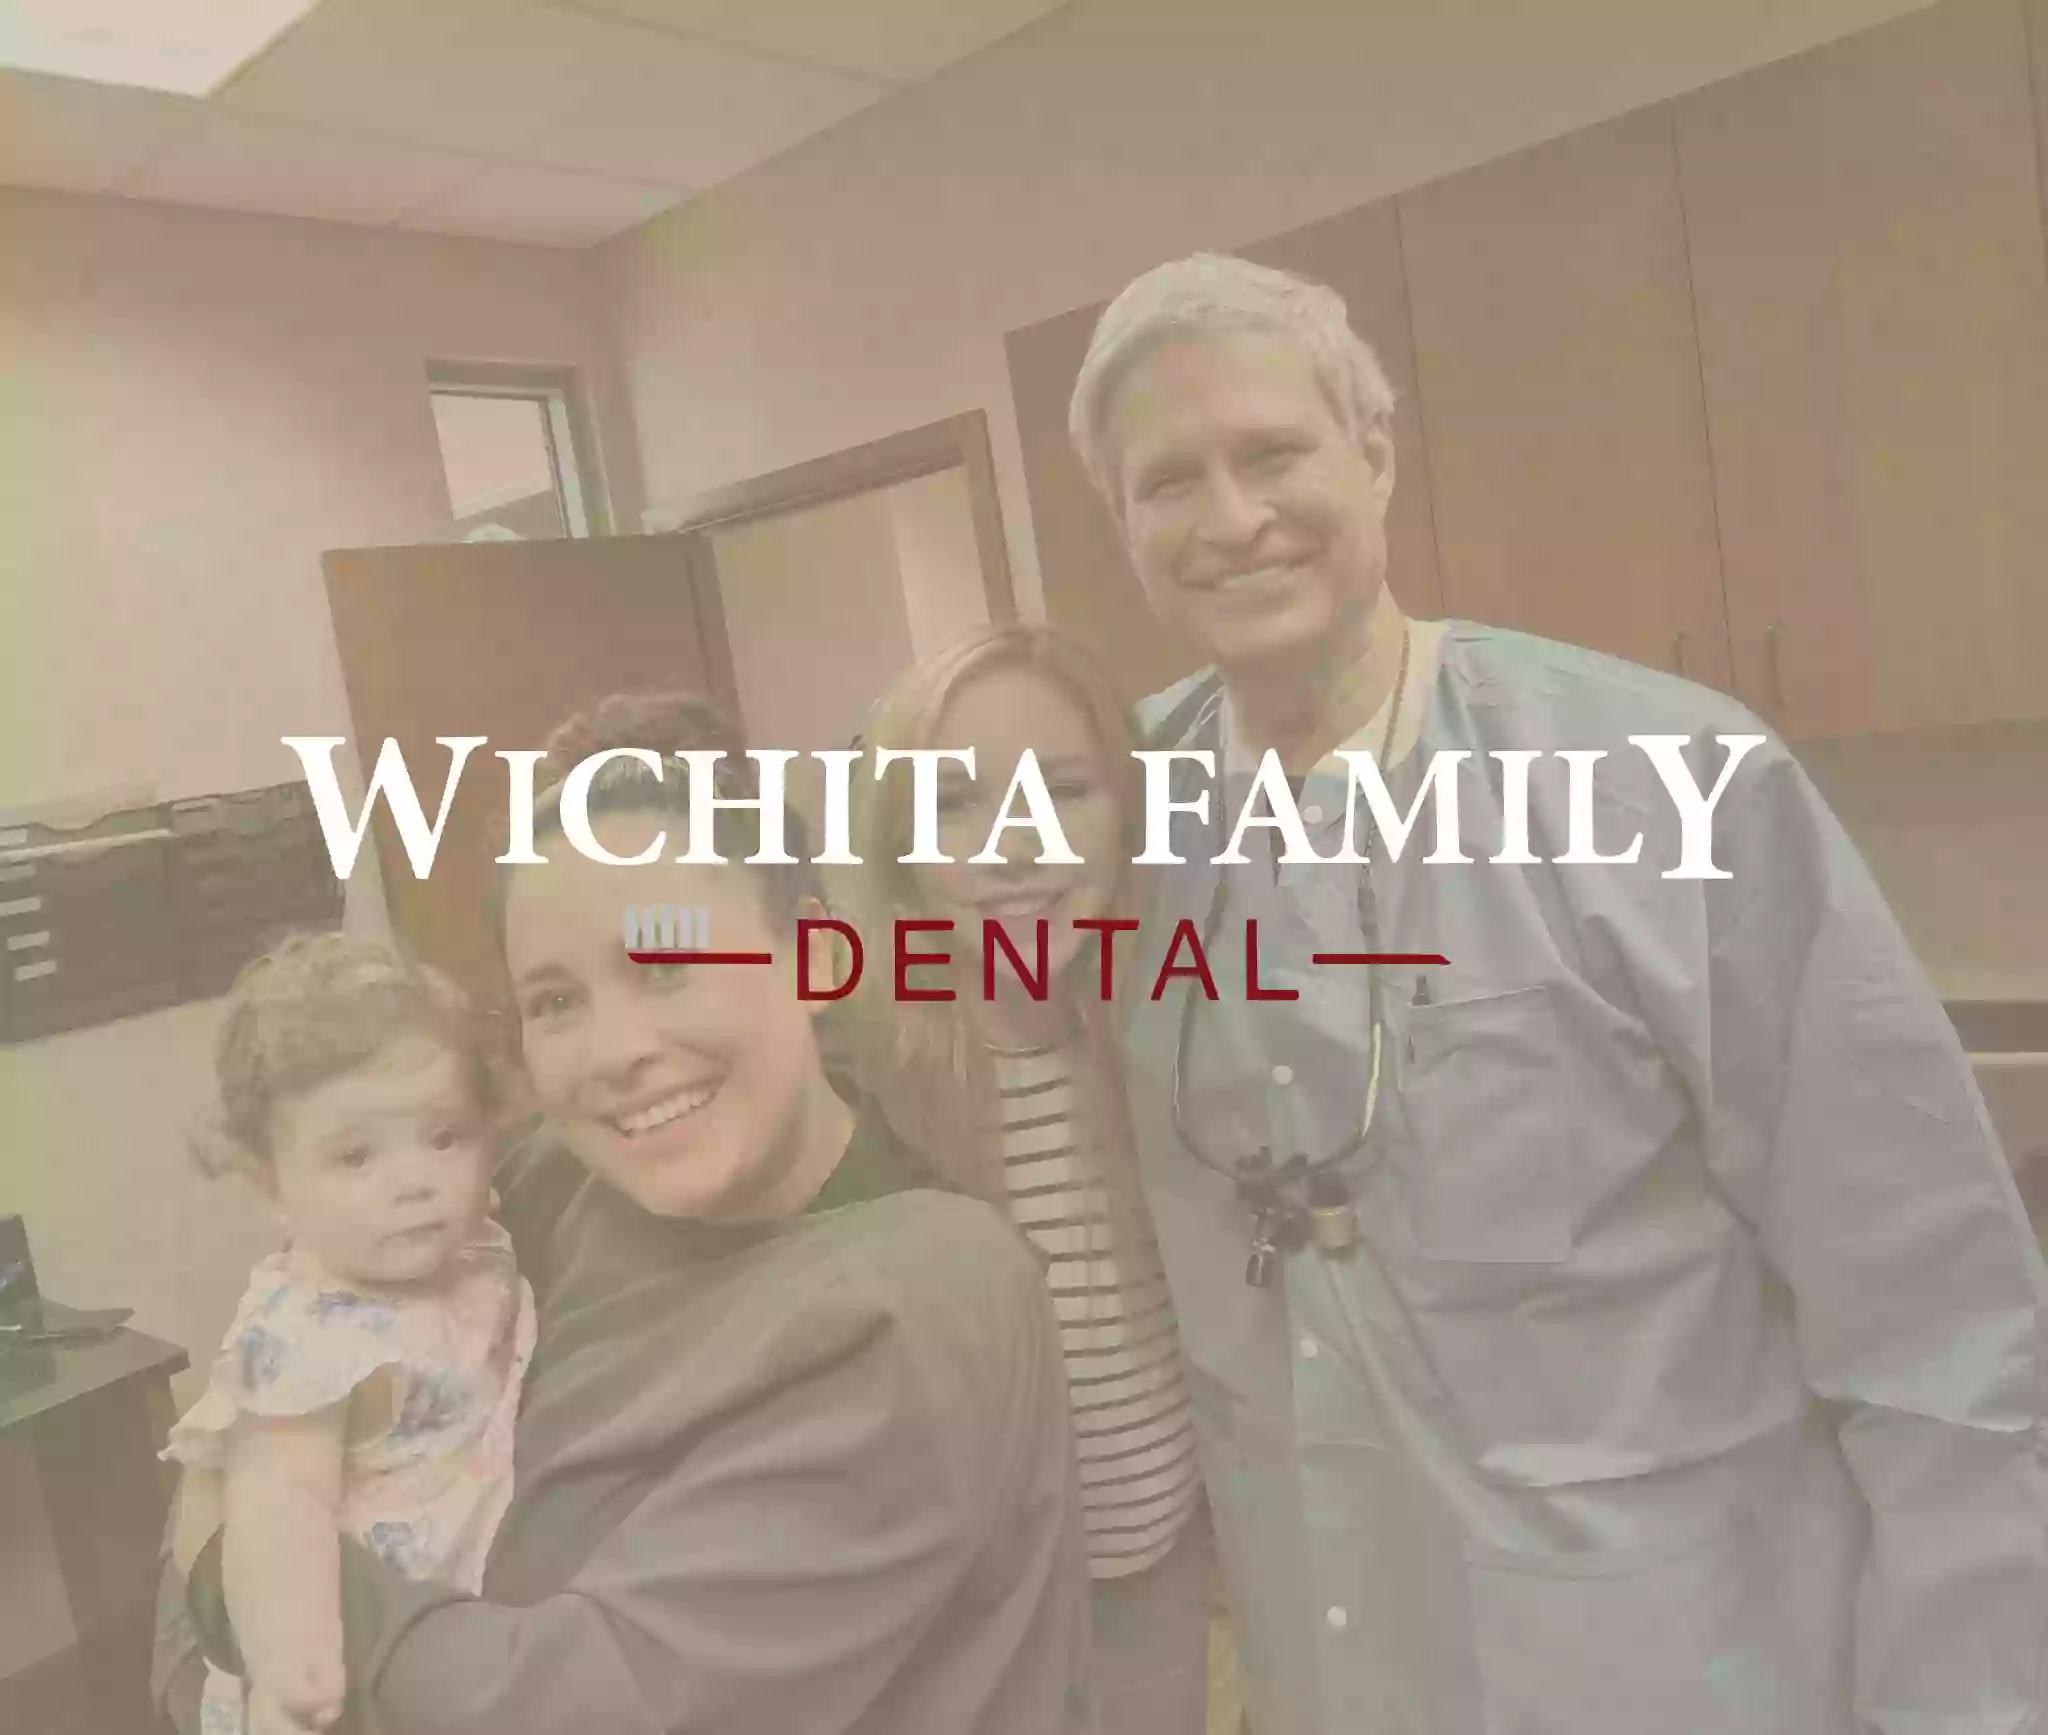 Wichita Family Dental - West